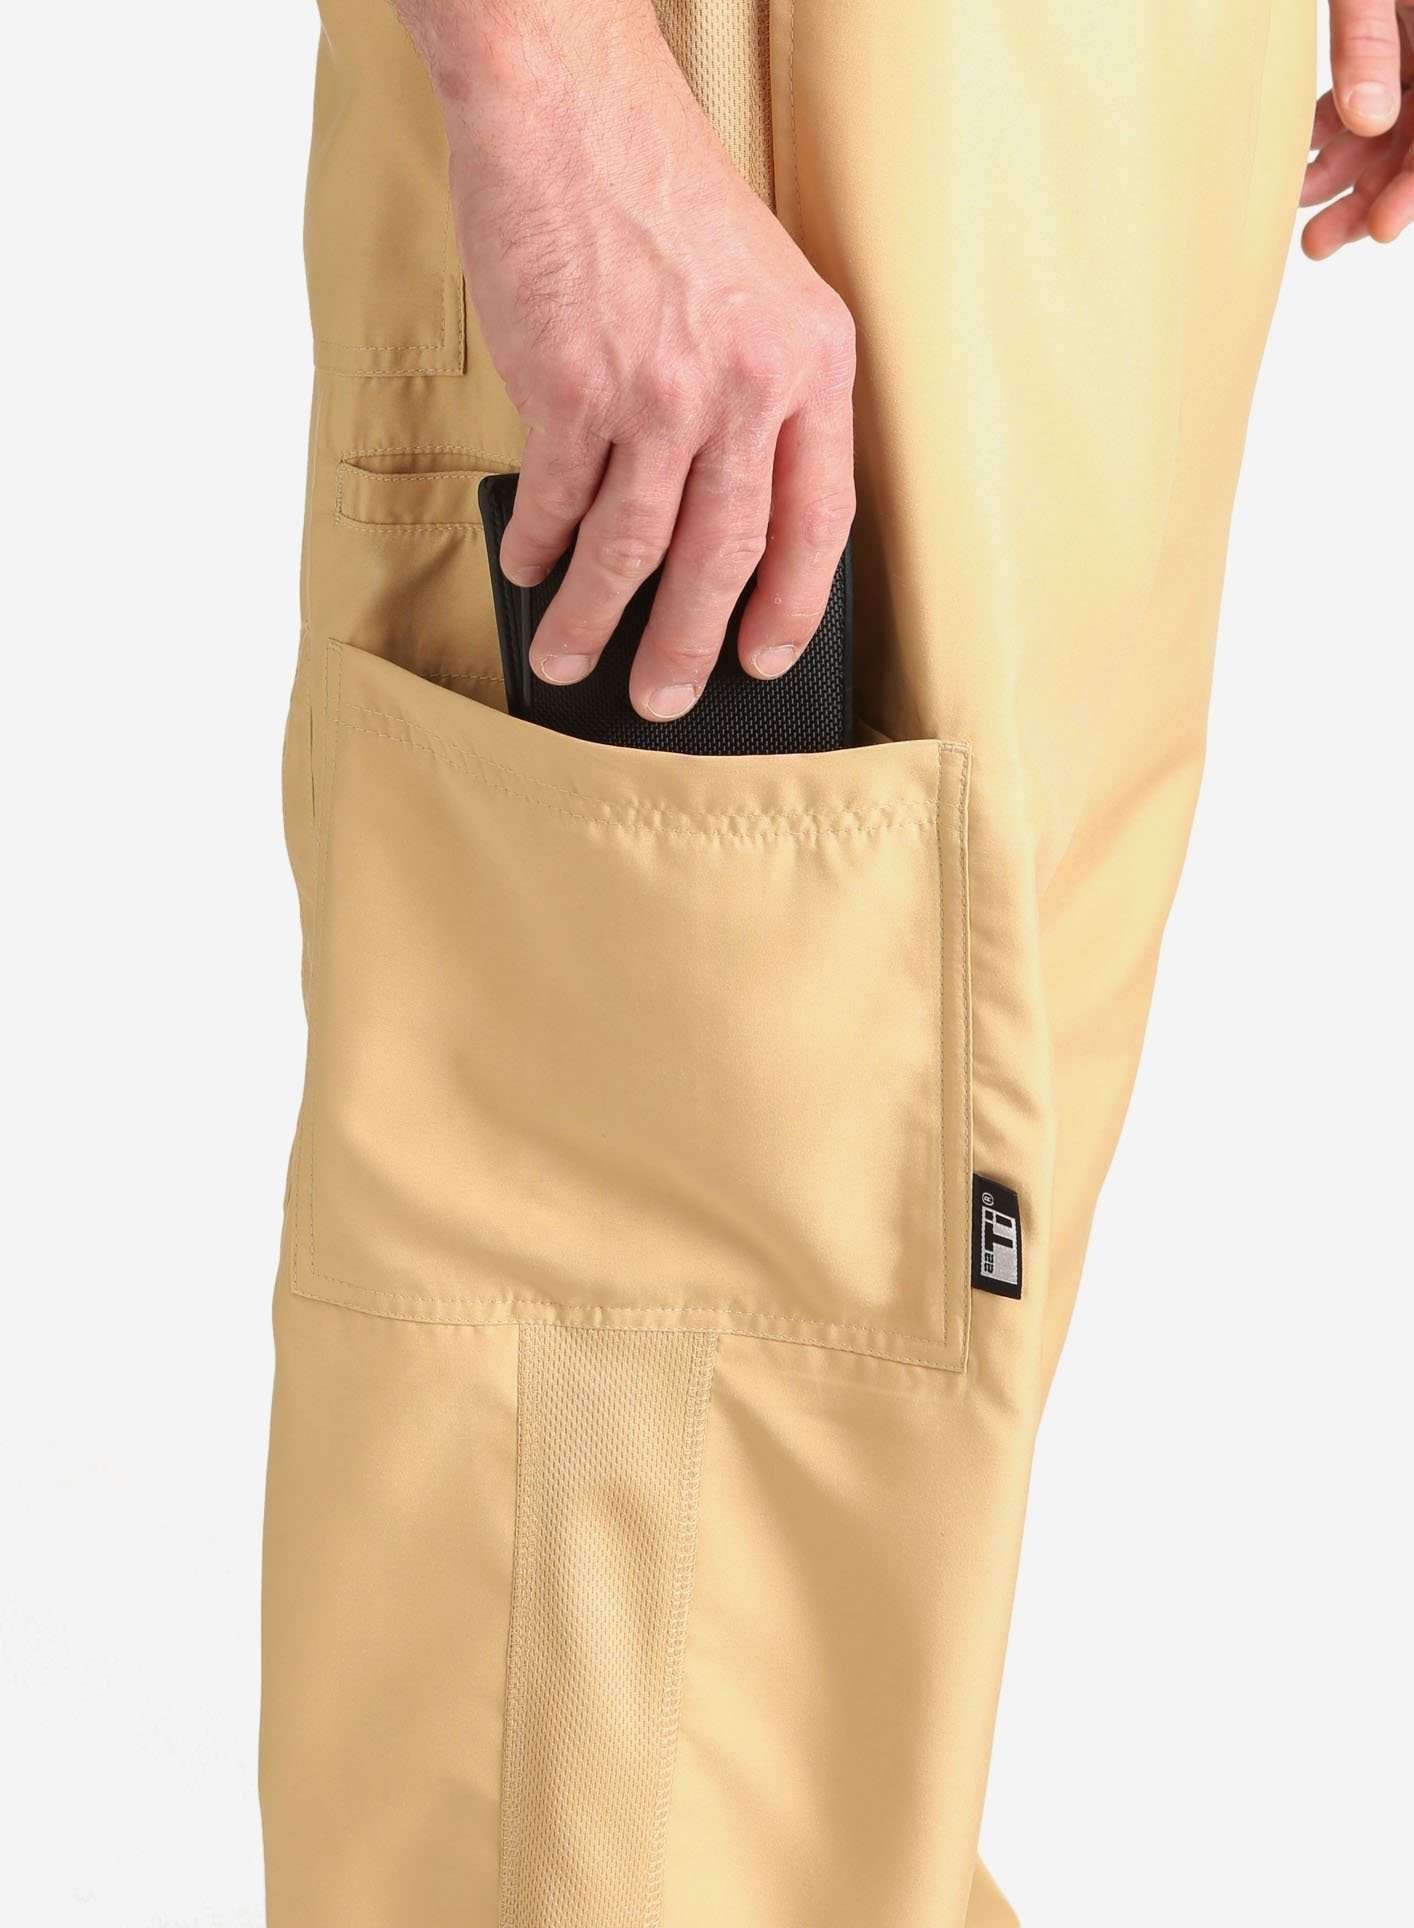 mens Elements cargo pocket relaxed fit scrub pants khaki